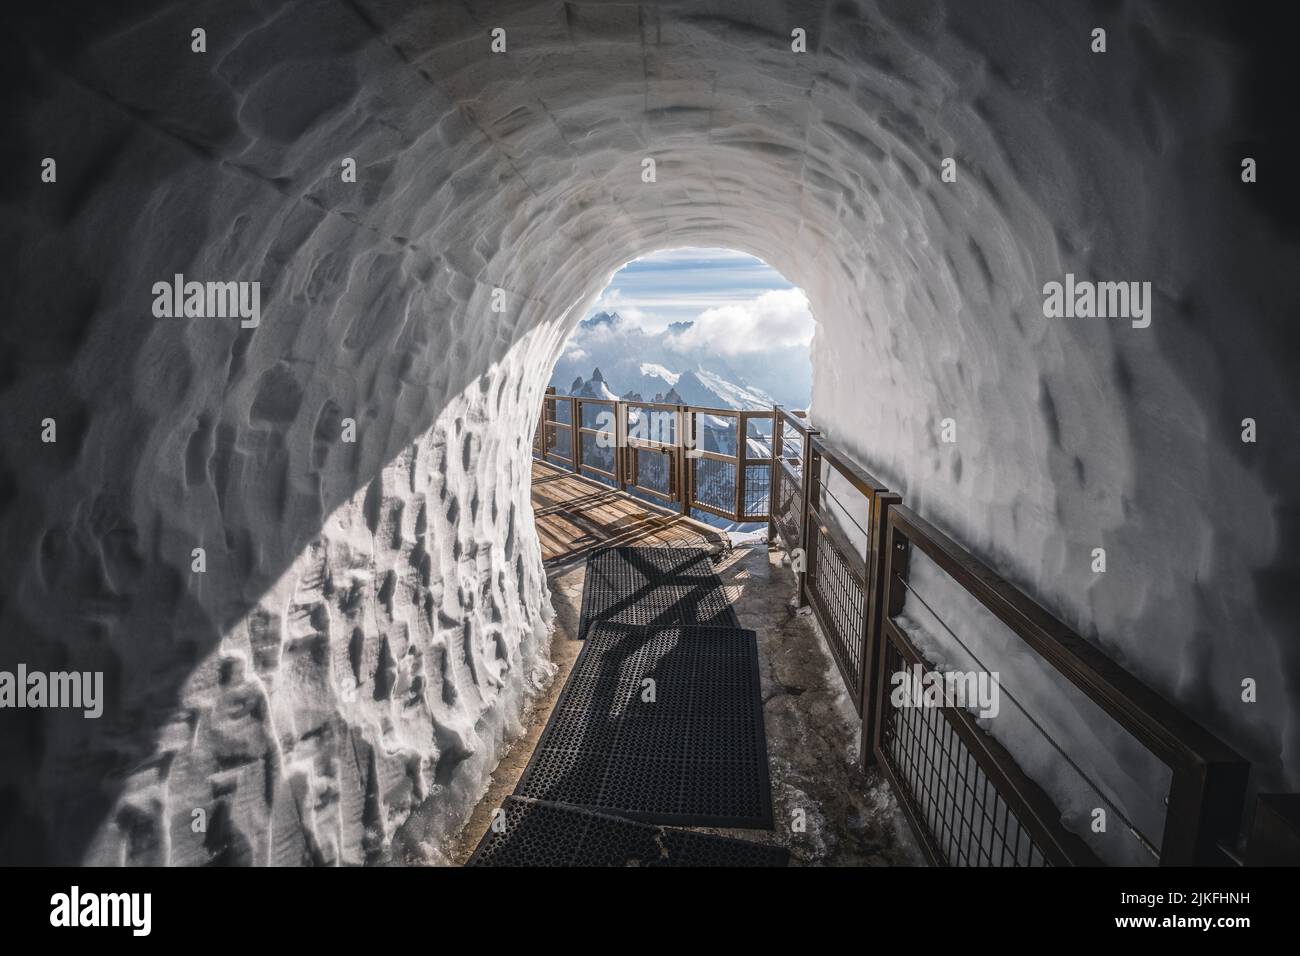 Passage en tunnel de neige au sommet de l'aiguille du midi au Mont blanc, France Banque D'Images